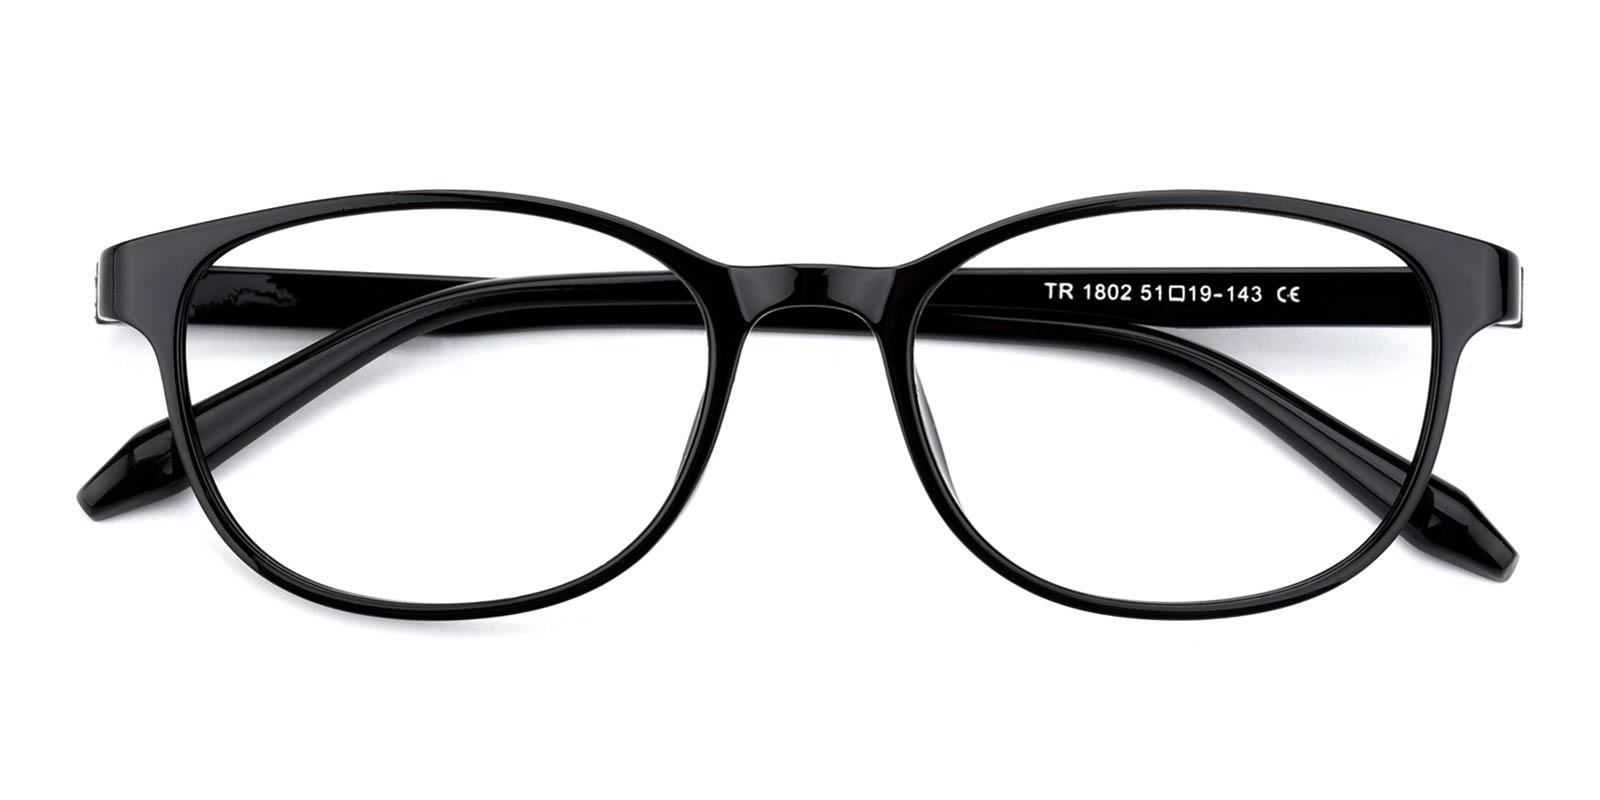 Adele-Black-Rectangle-TR-Eyeglasses-detail